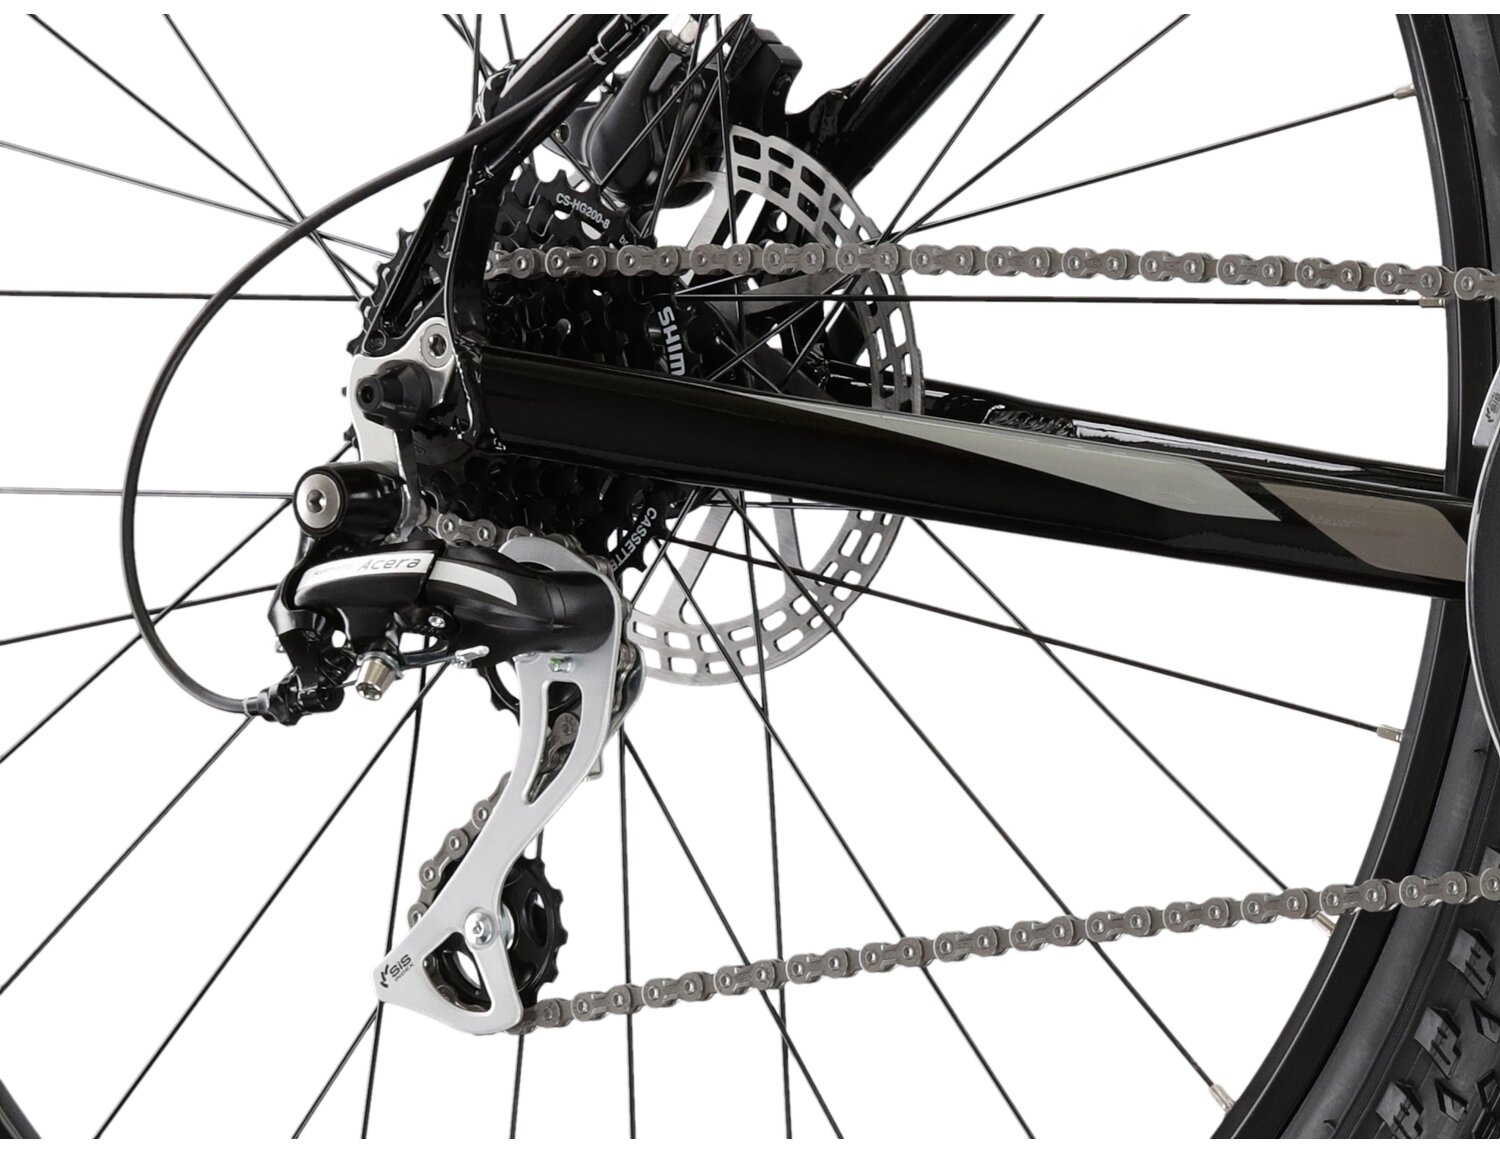  Tylna ośmiobiegowa przerzutka Shimano Acera RD M3020 oraz hydrauliczne hamulce tarczowe Shimano MT200 w rowerze górskim MTB KROSS Hexagon 6.0 